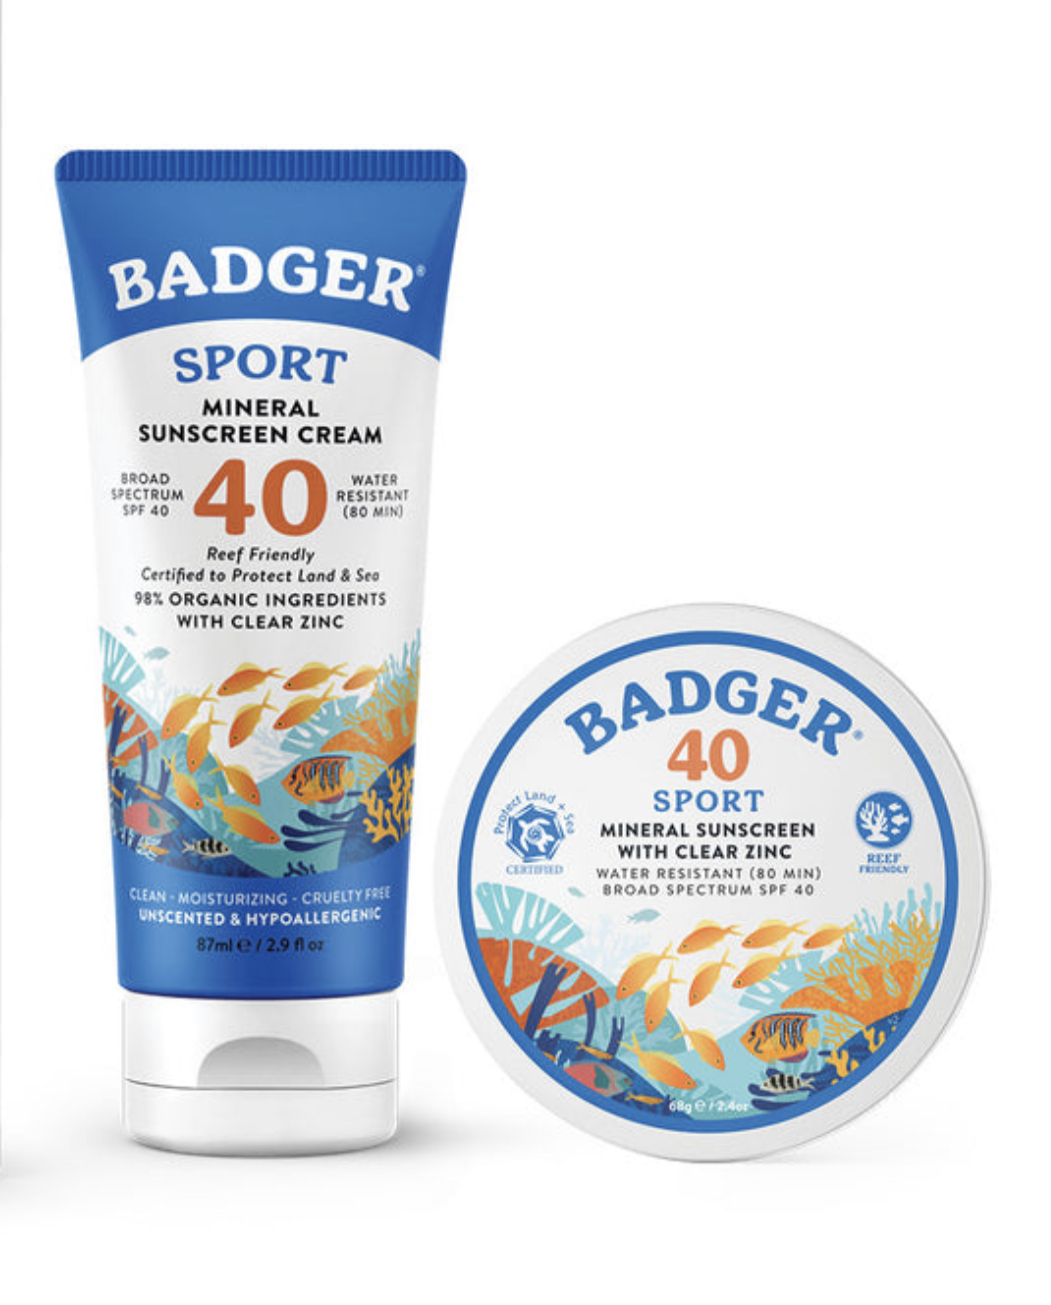 Badger sunscreen sport